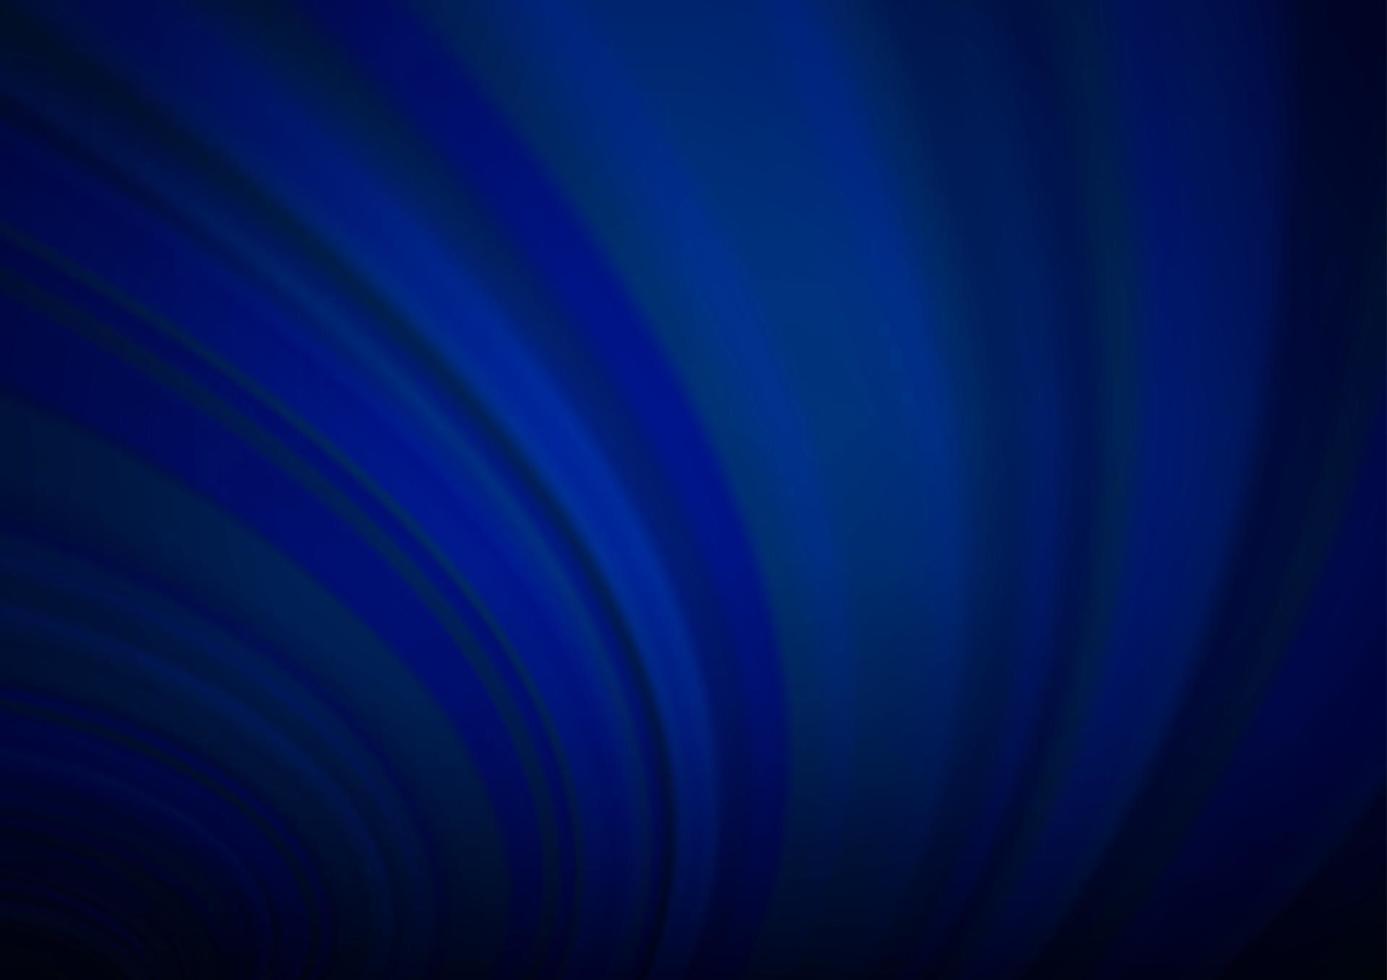 modelo abstrato brilhante de vetor azul escuro.